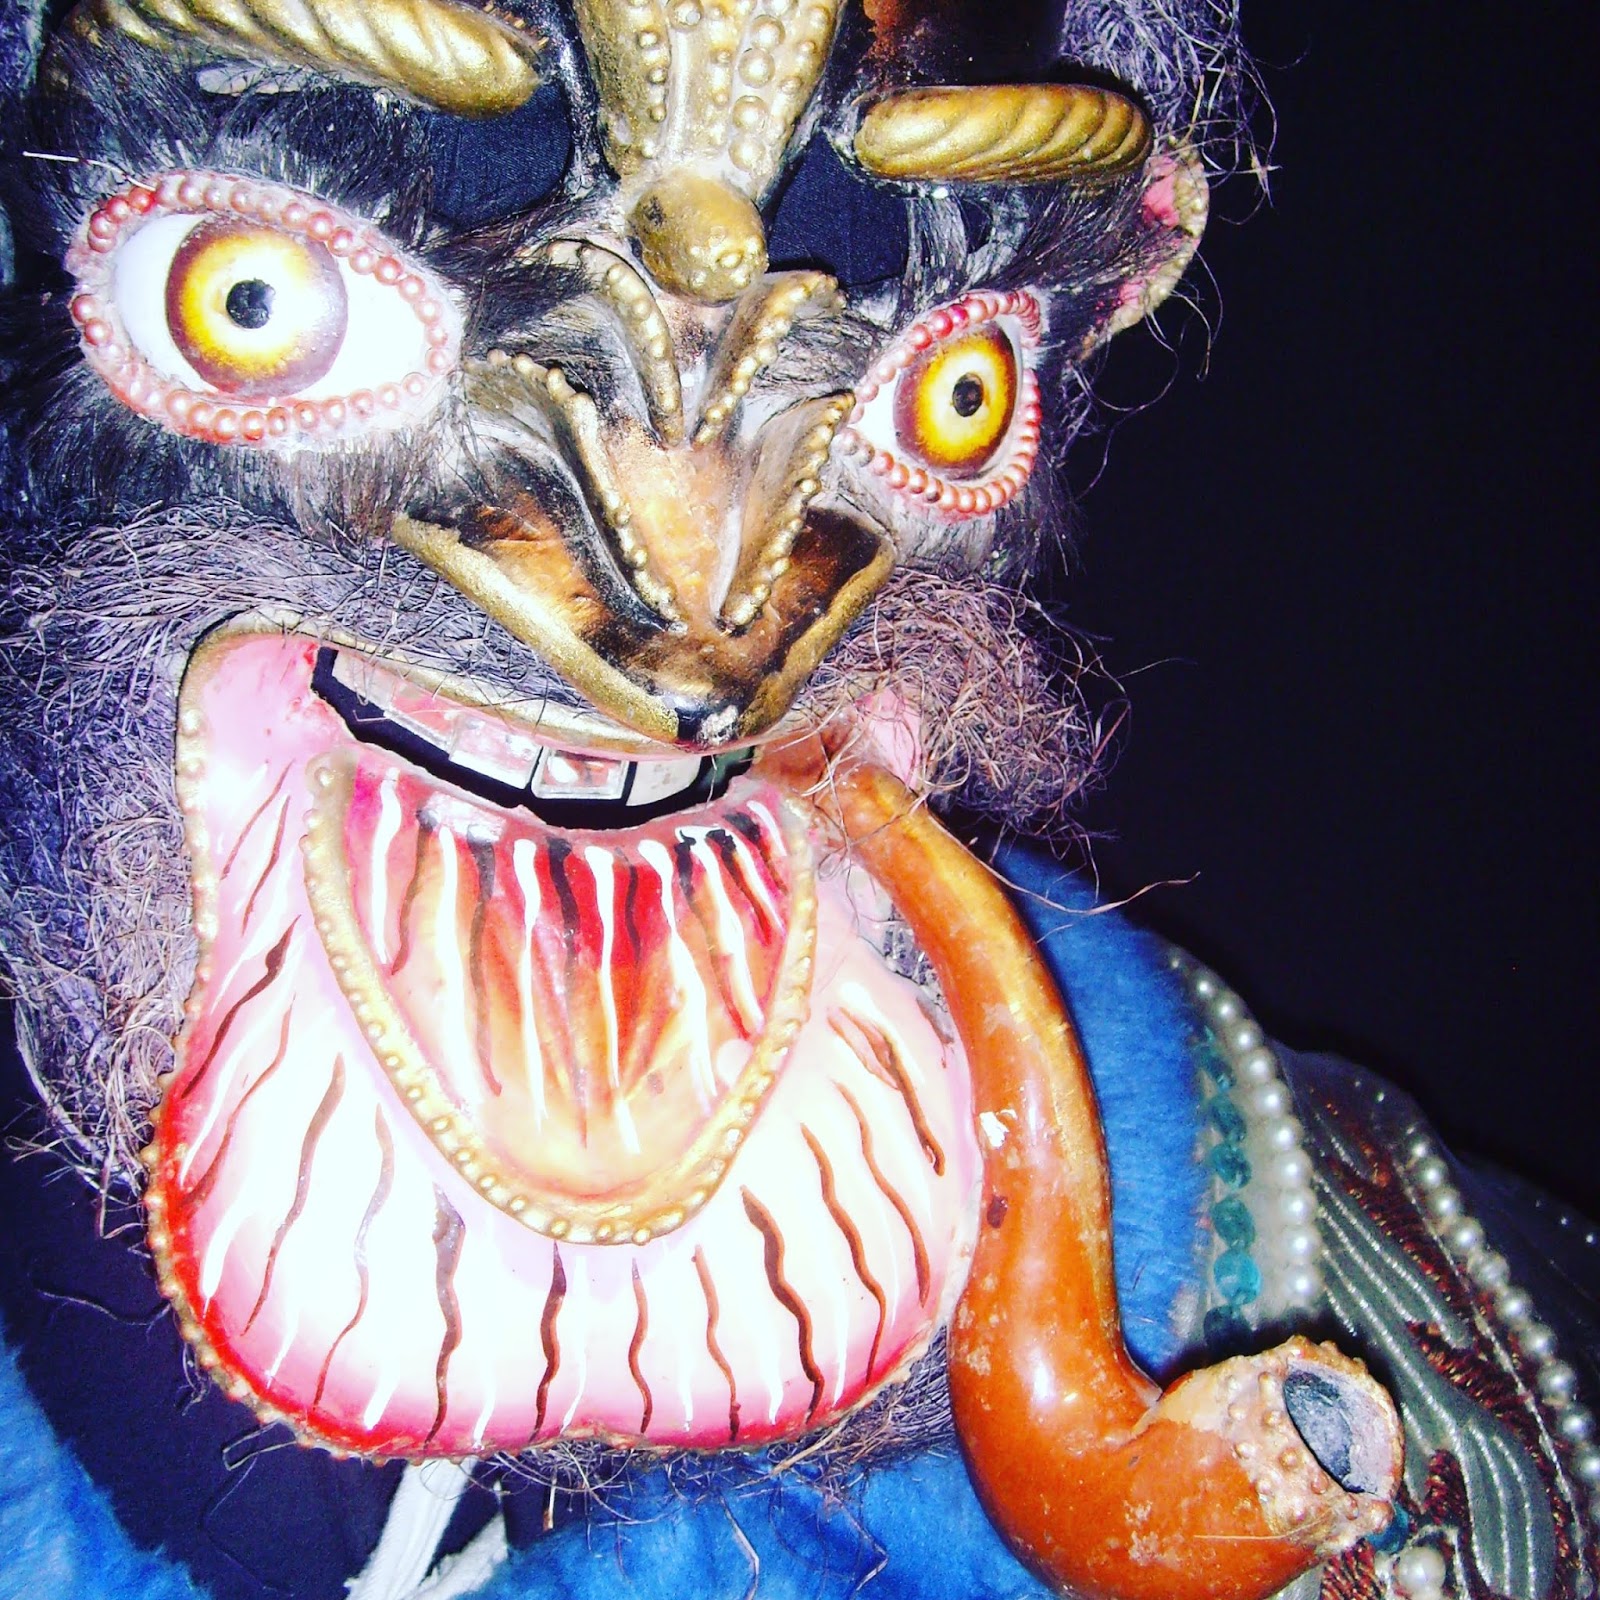 scary devil mask la paz bolivia